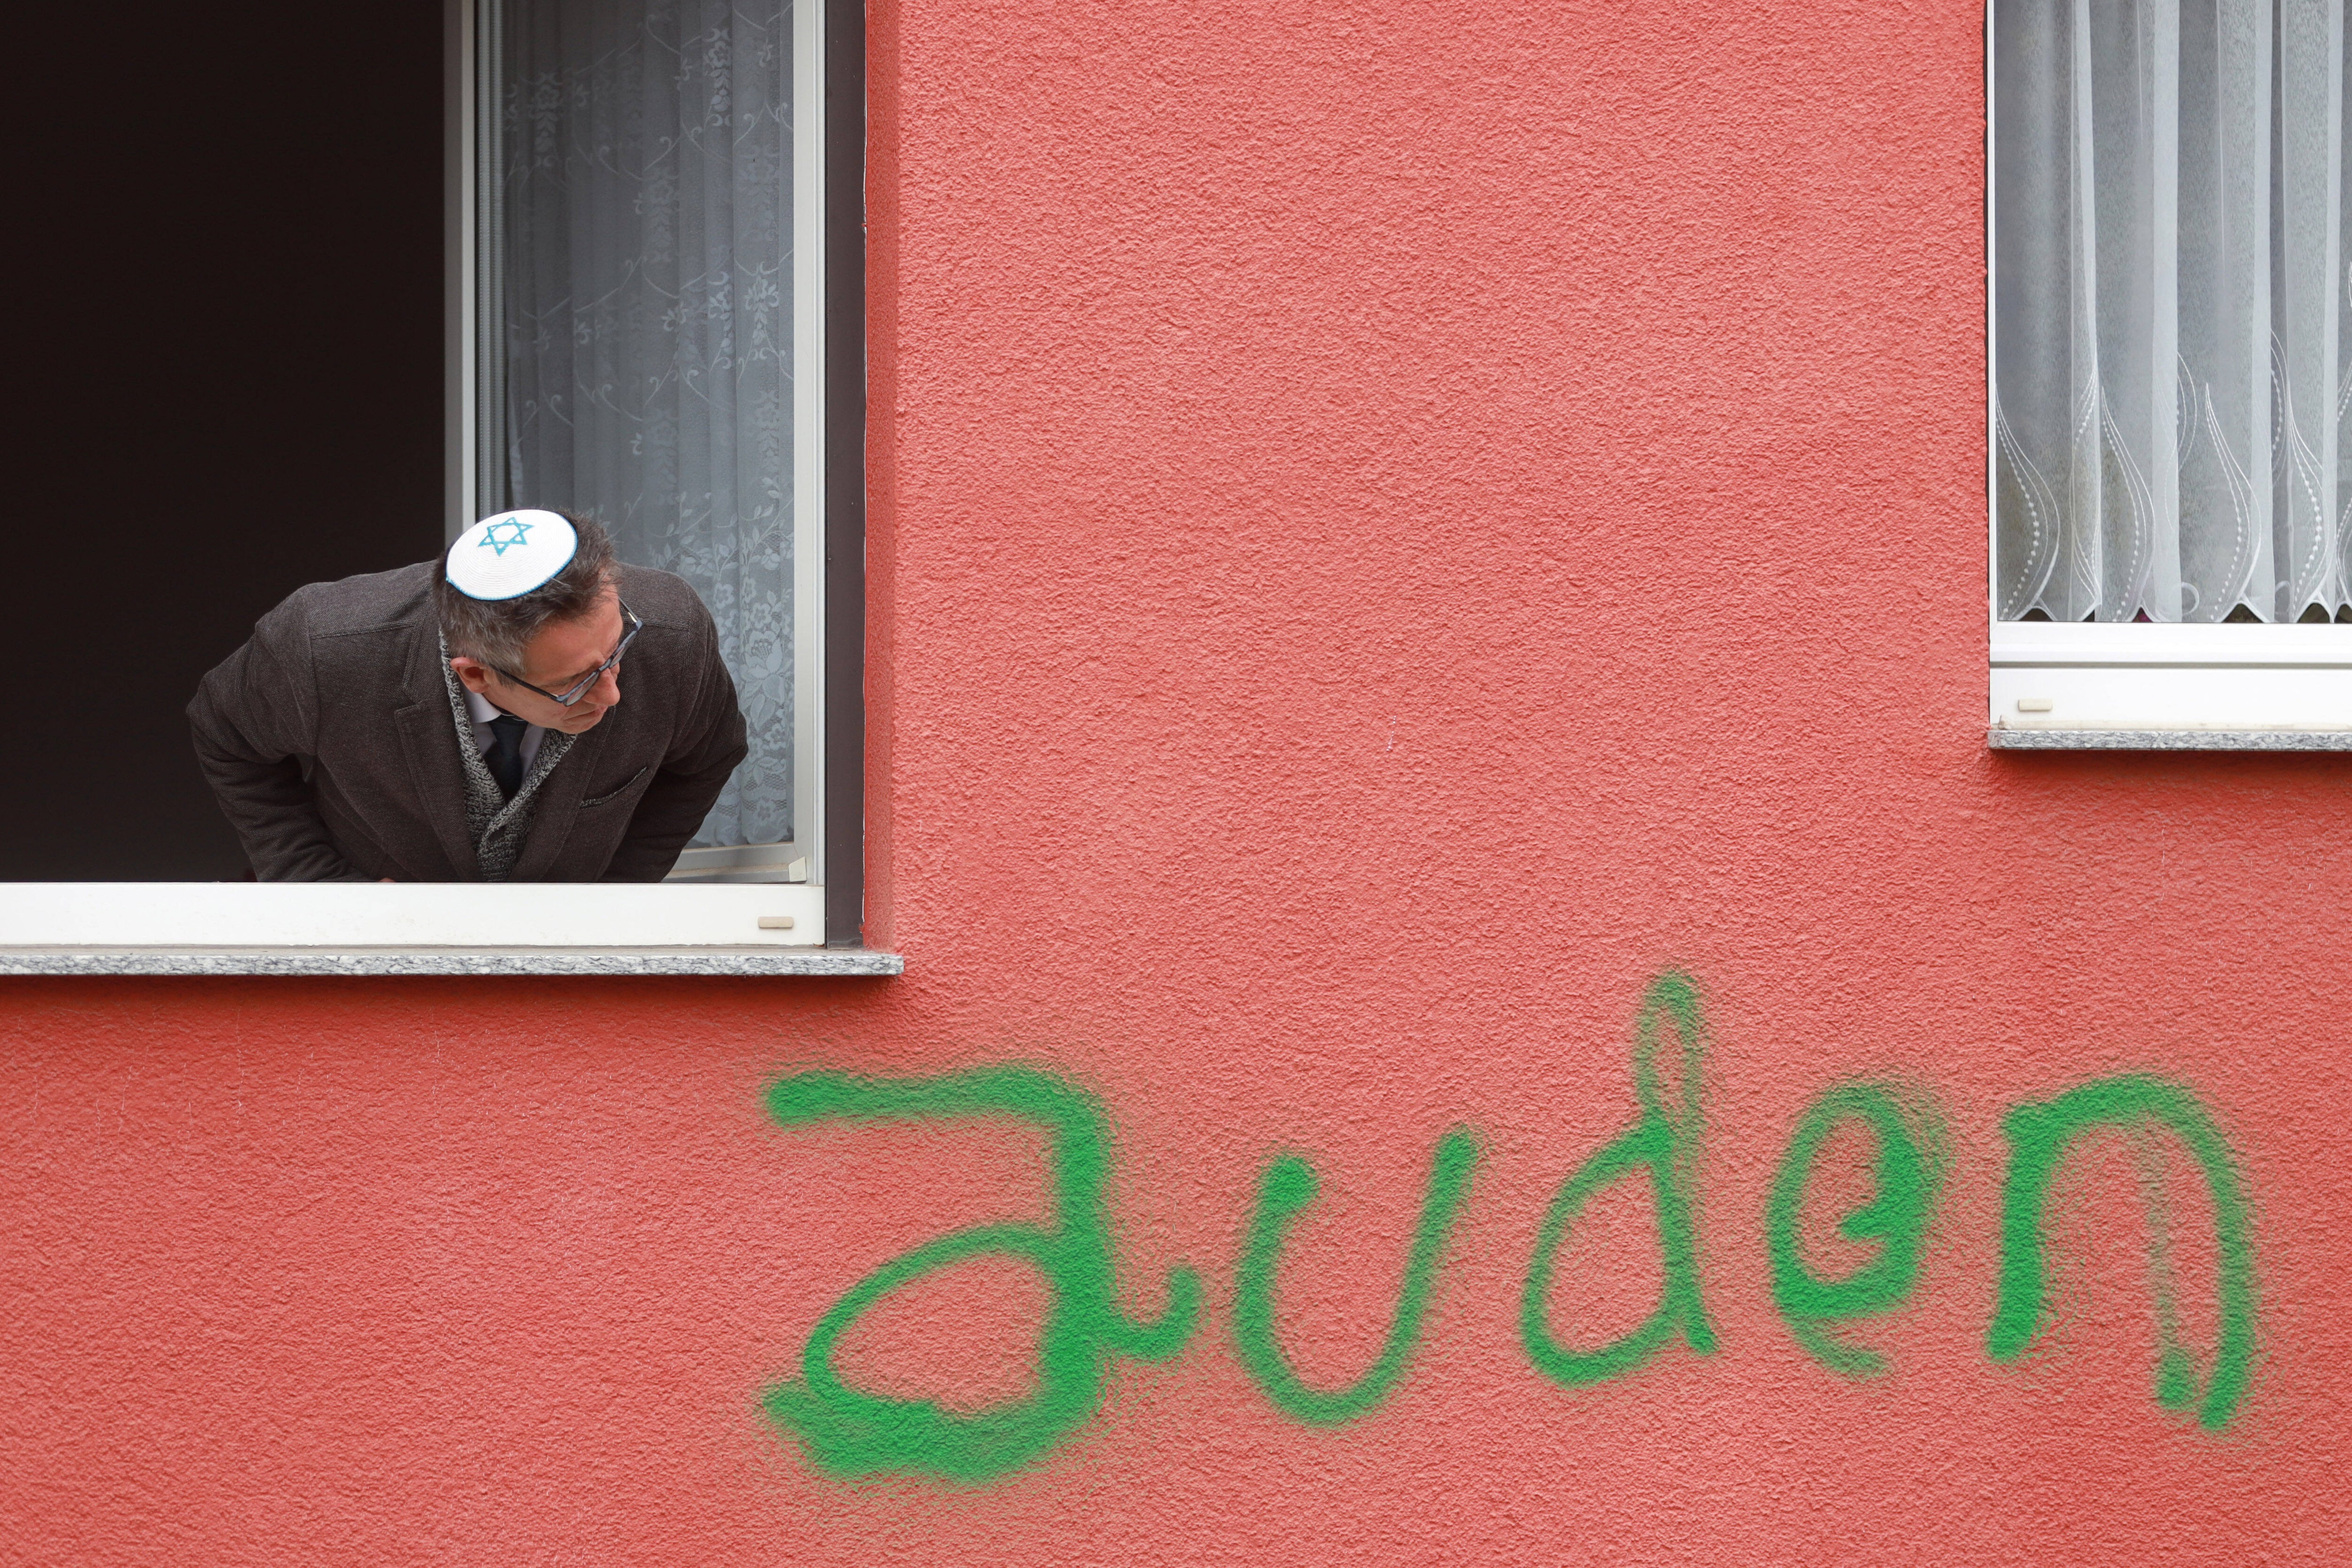 Ein Mann mit Kippa guckt aus einem Fenster. Unter dem Fenster ist die Wand mit dem Wort "Juden" beschmiert.